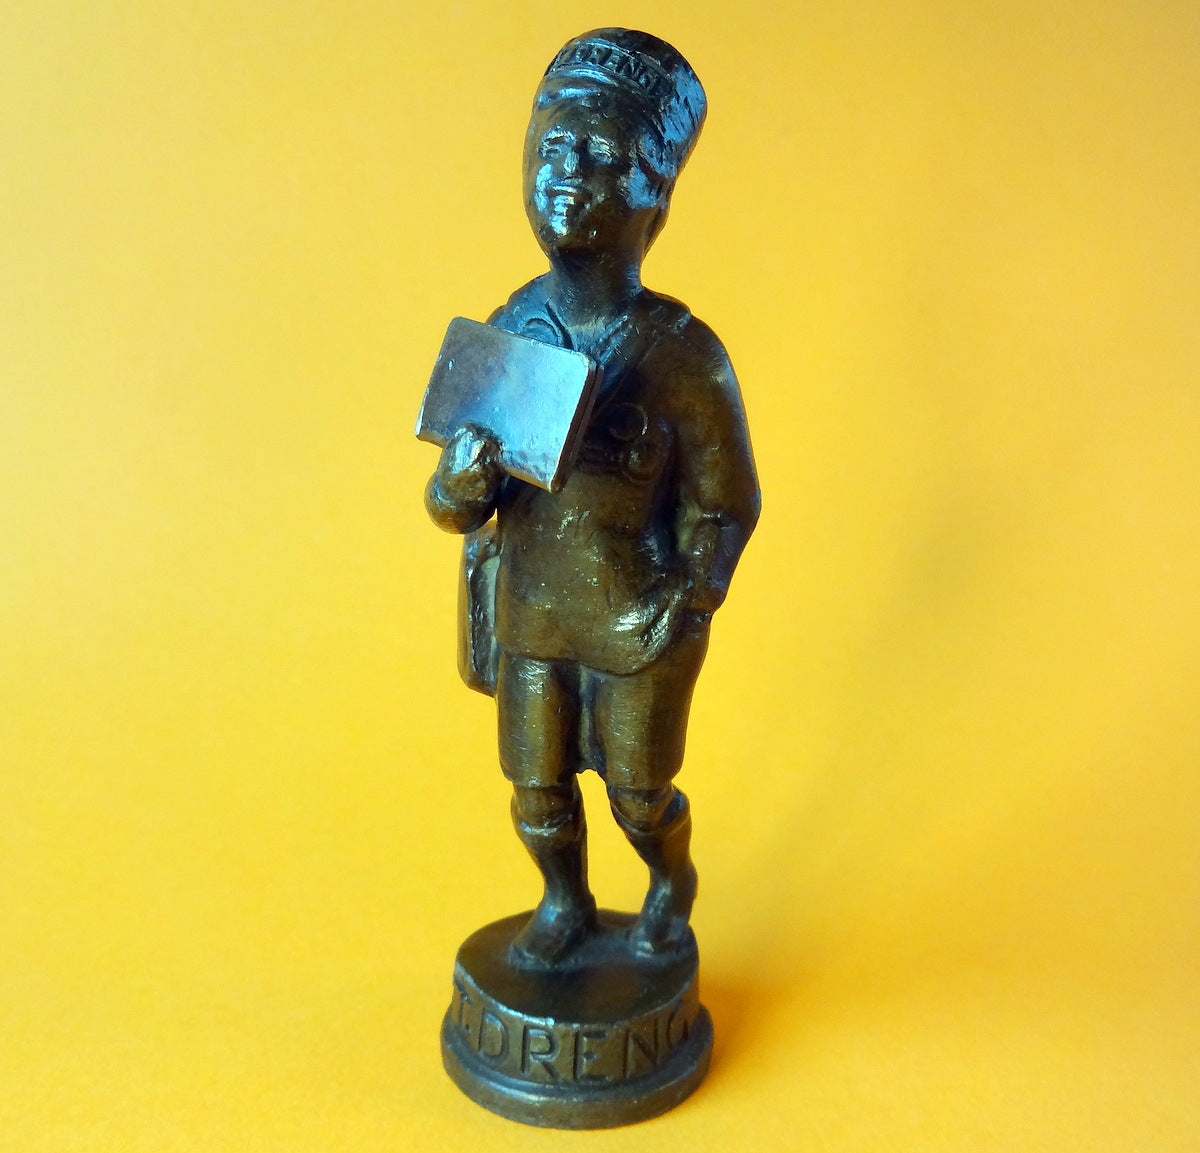 BT-drengen i bronze patineret tin, givet af Berlingske Tidende